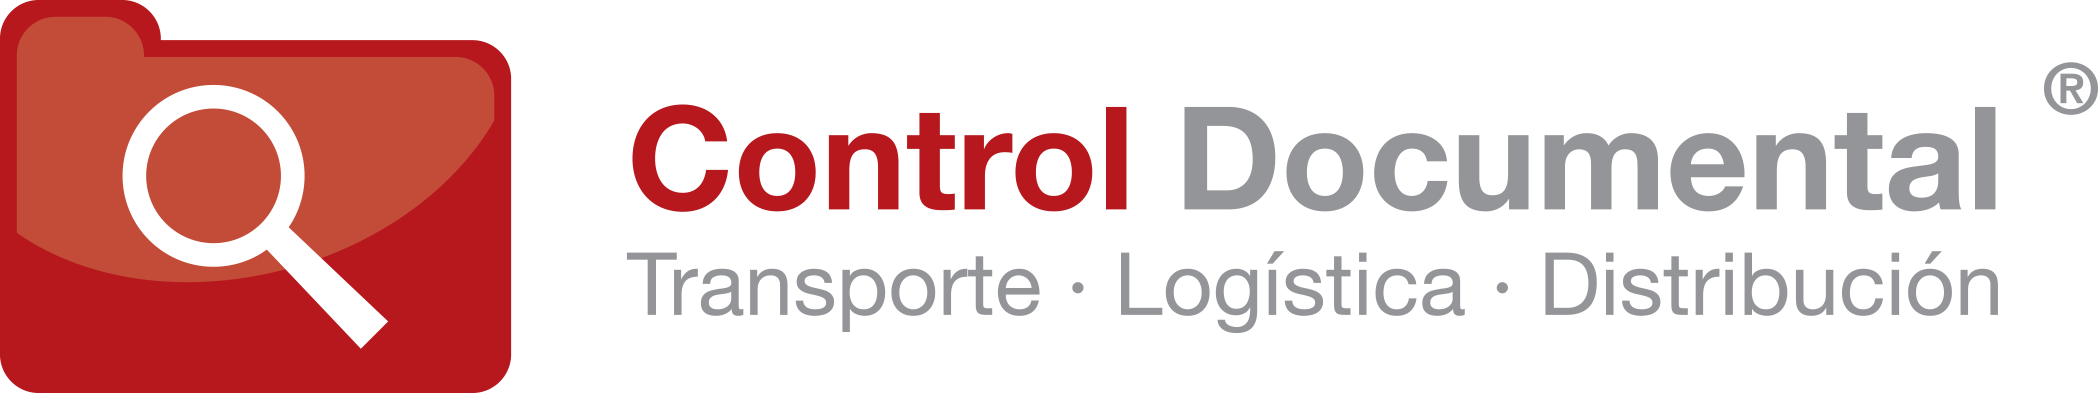 Control Documental | Transporte Logística Distribución